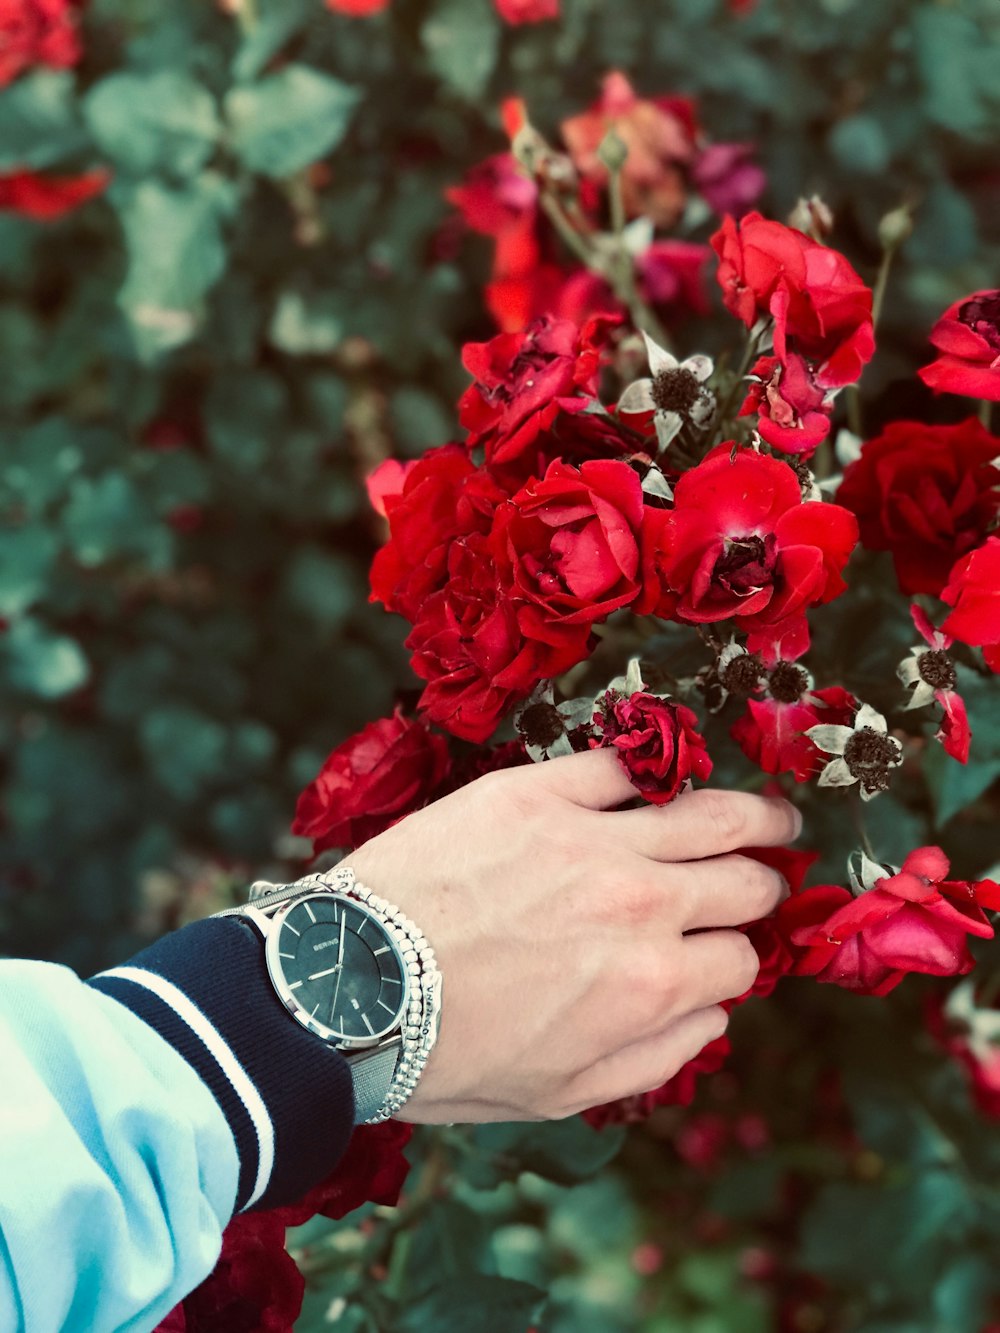 pessoa que usa relógio segurando flor pétala vermelha